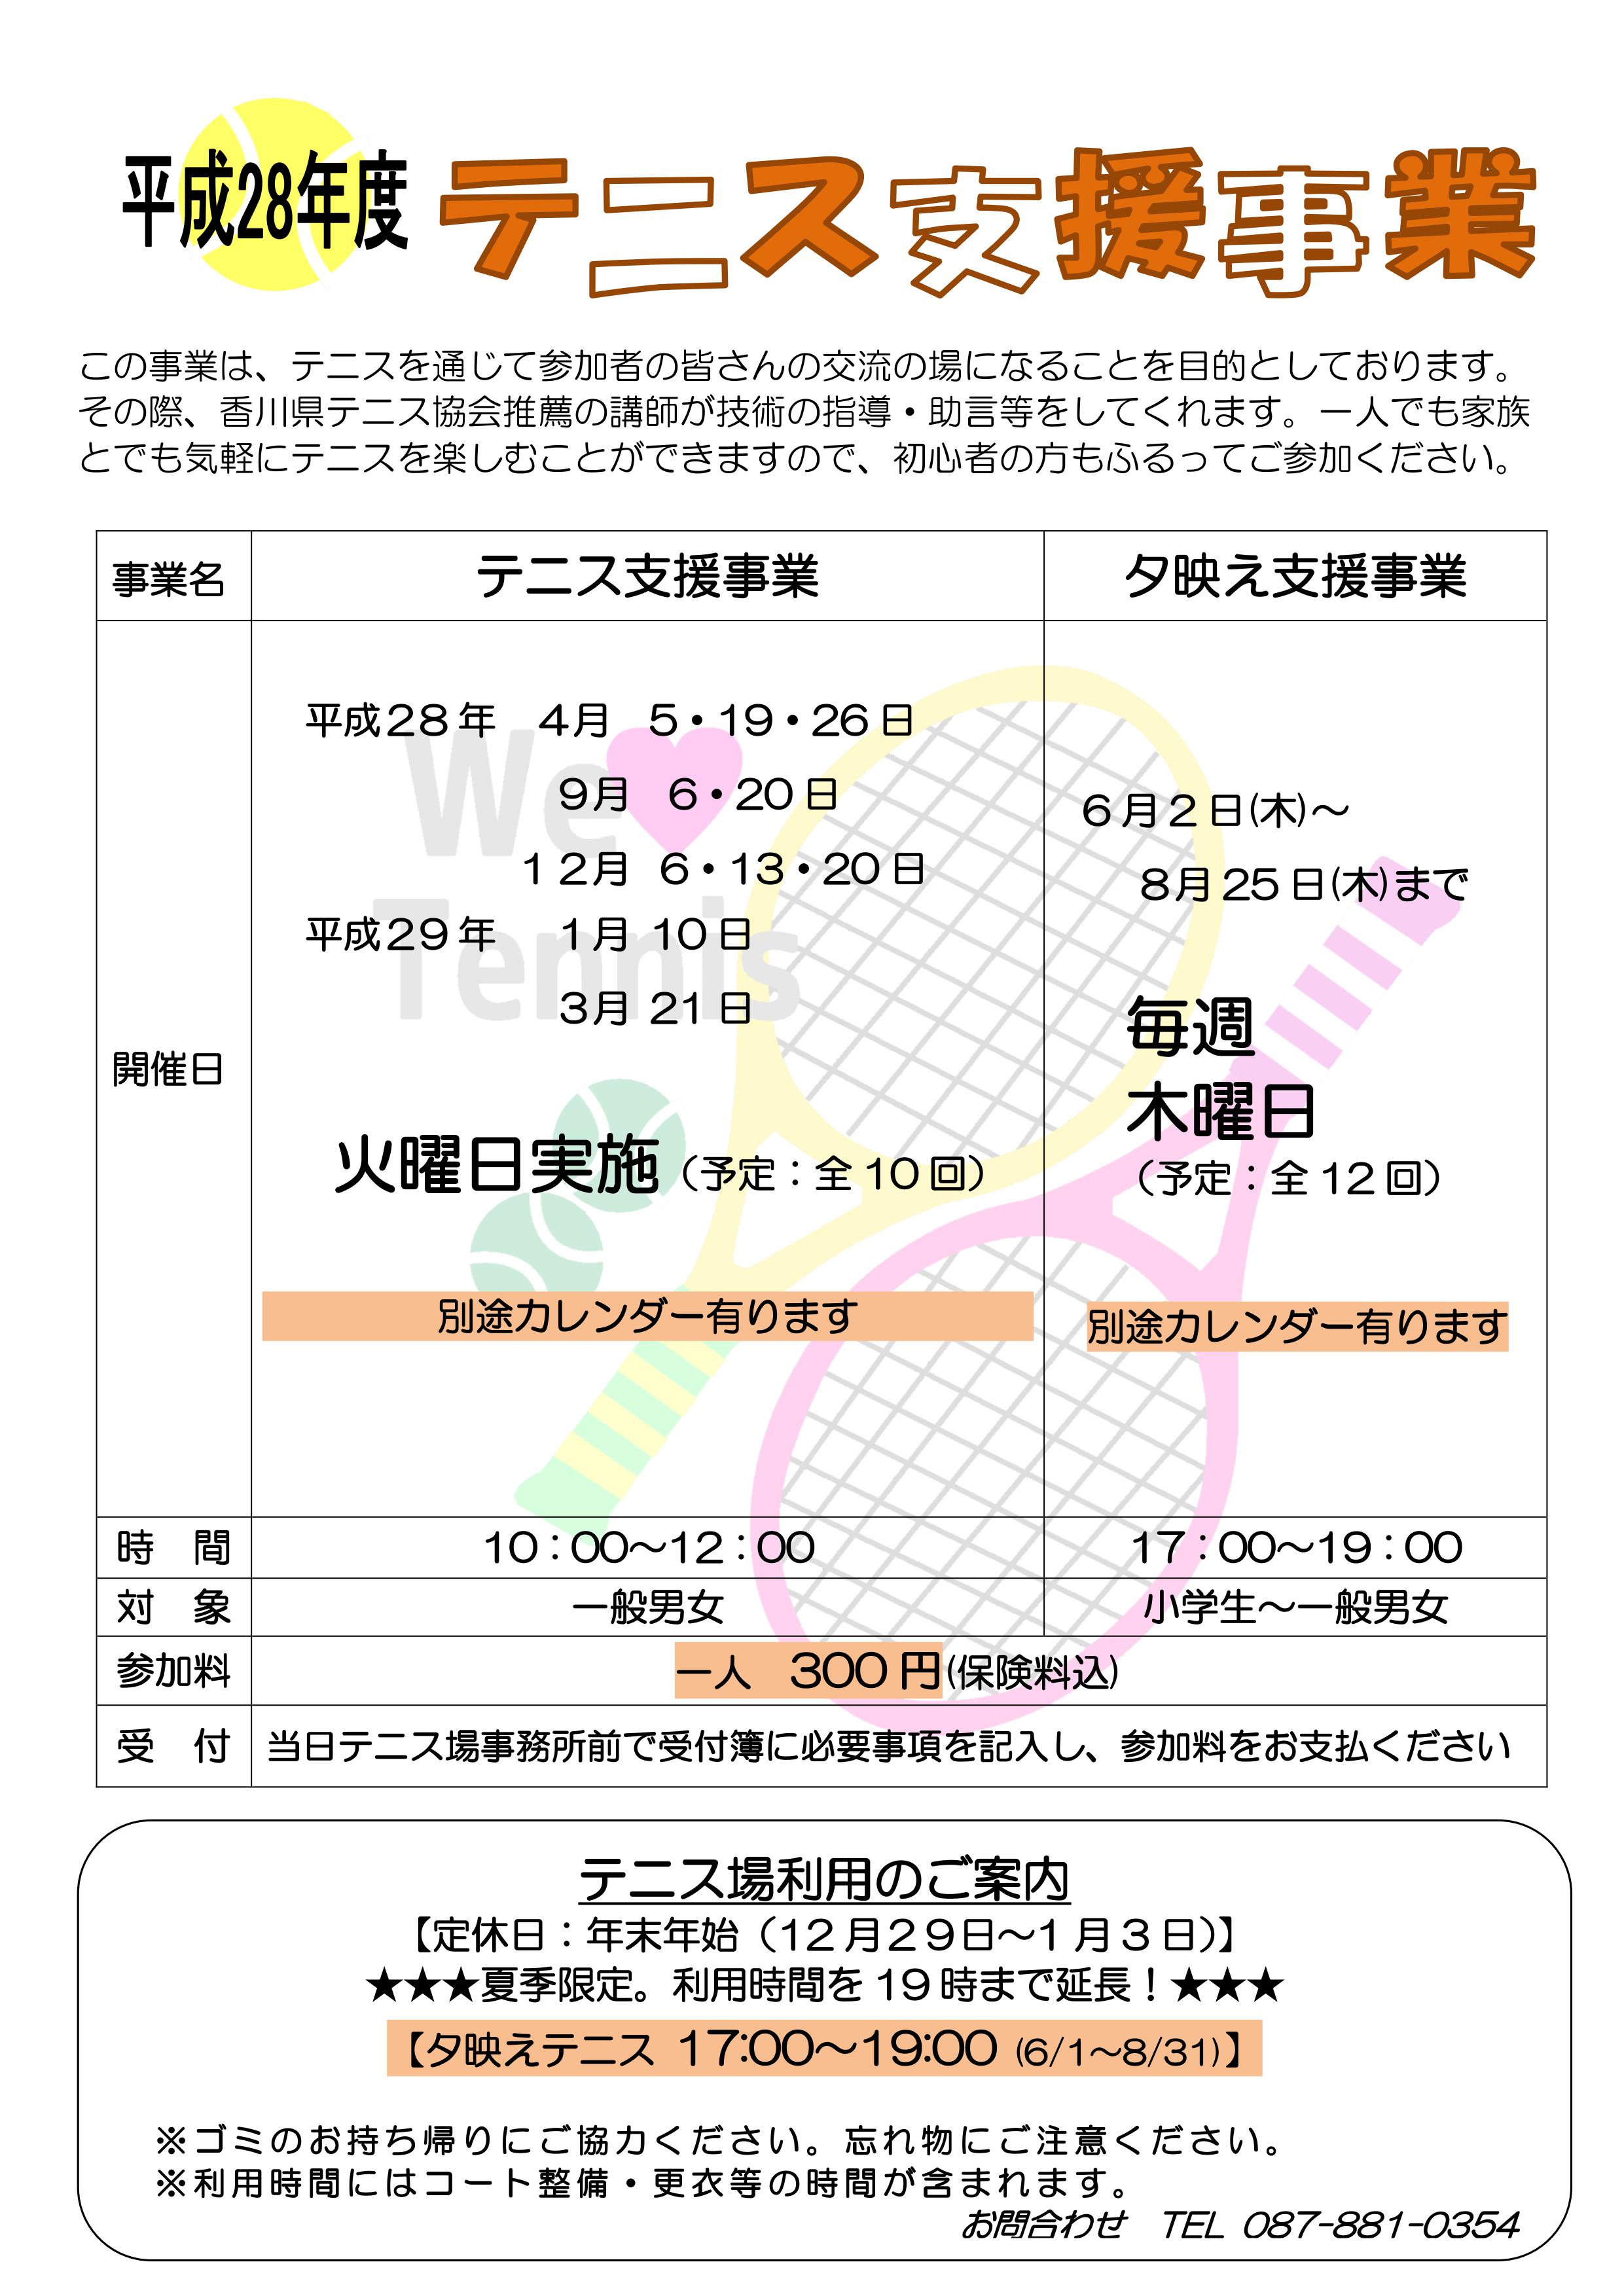 平成28年度 テニス支援事業のお知らせ 香川県総合運動公園 いくしまスポーツチャレンジ共同体